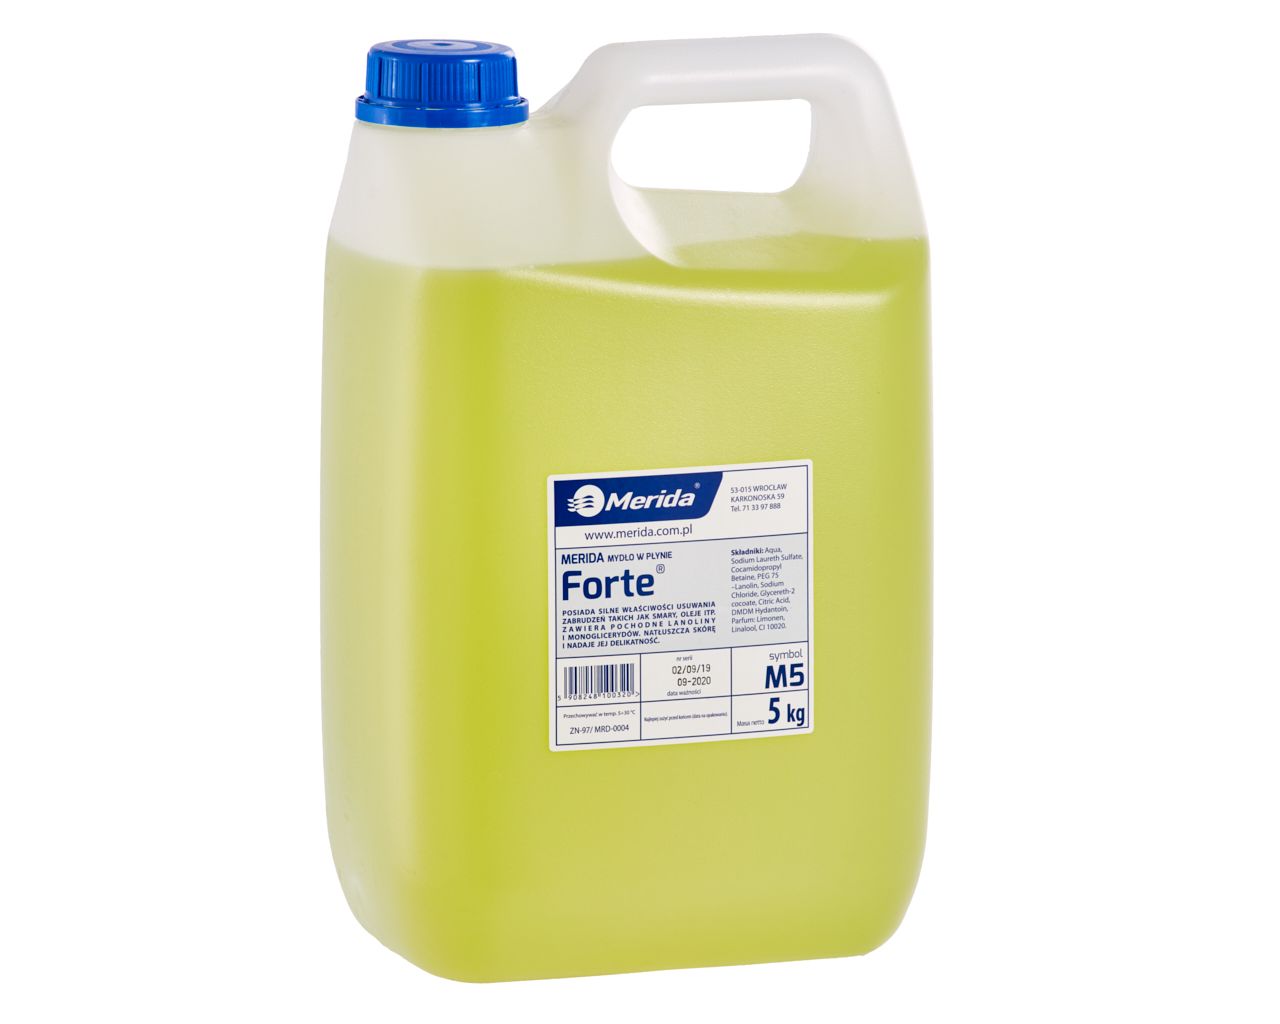 MERIDA FORTE - special purpose liquid soap 5 kg, green